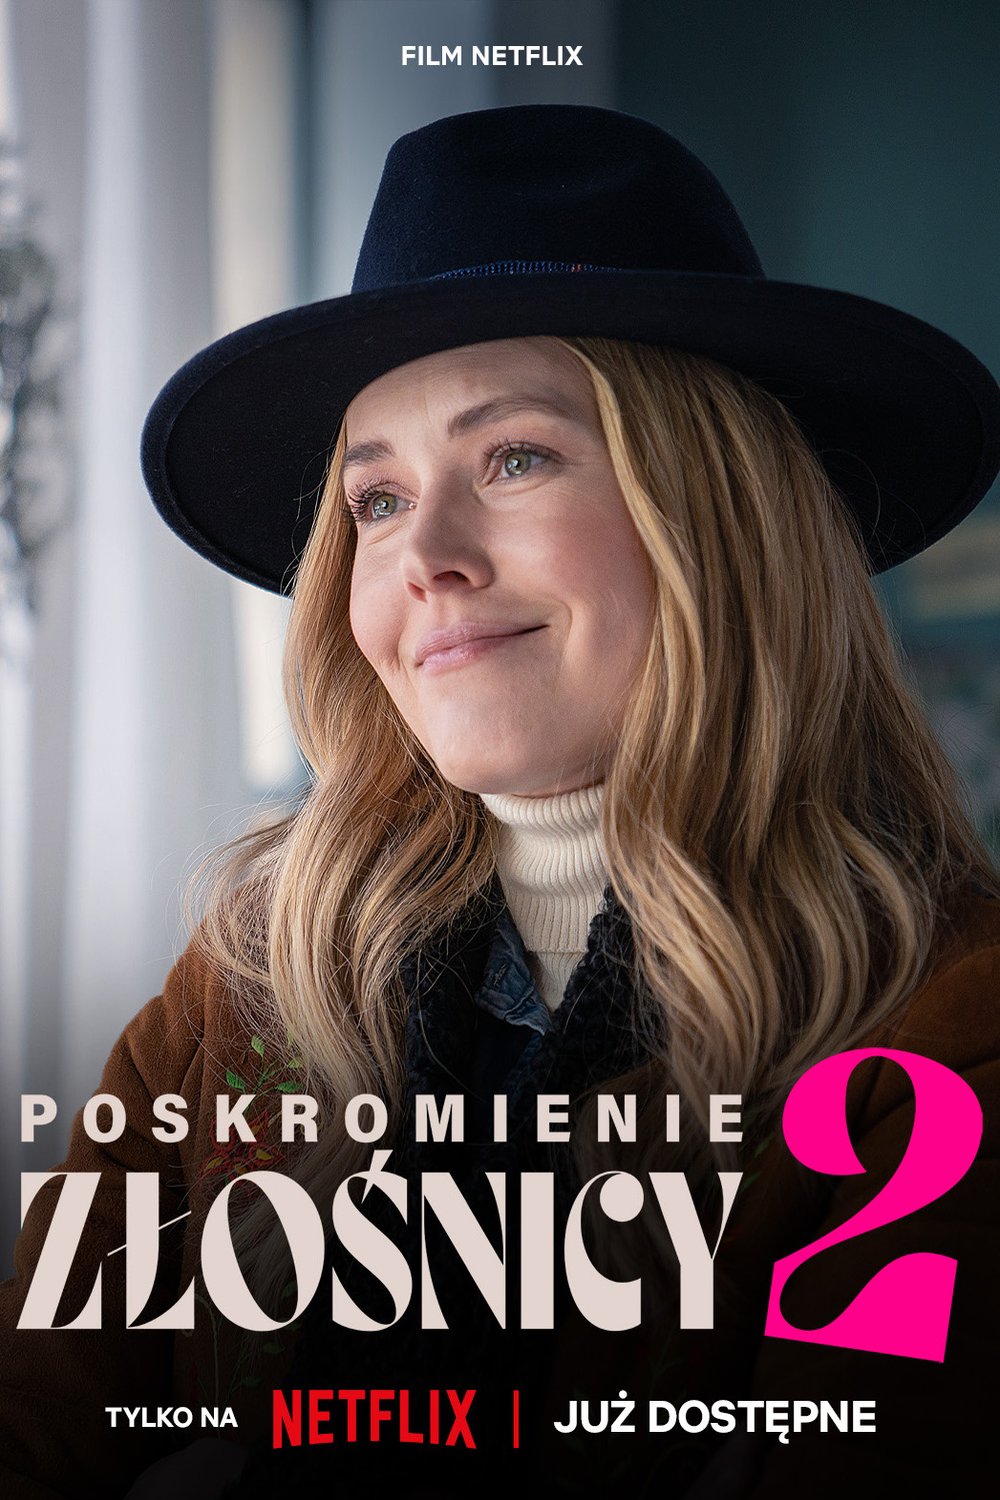 L'affiche originale du film Poskromienie zlosnicy 2 en polonais